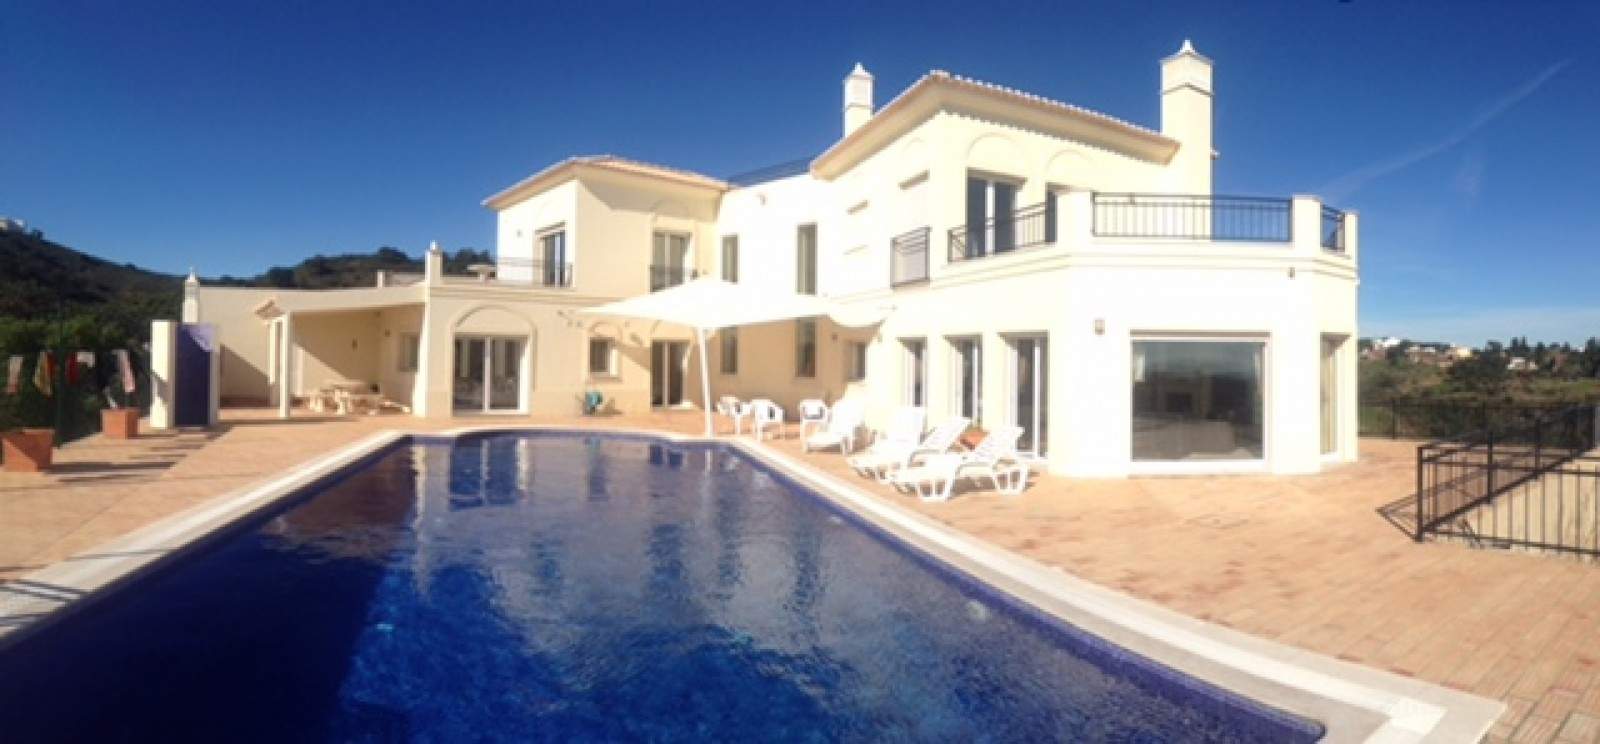 Villa de 4 dormitorios con piscina, en venta en Tavira, Algarve_201173